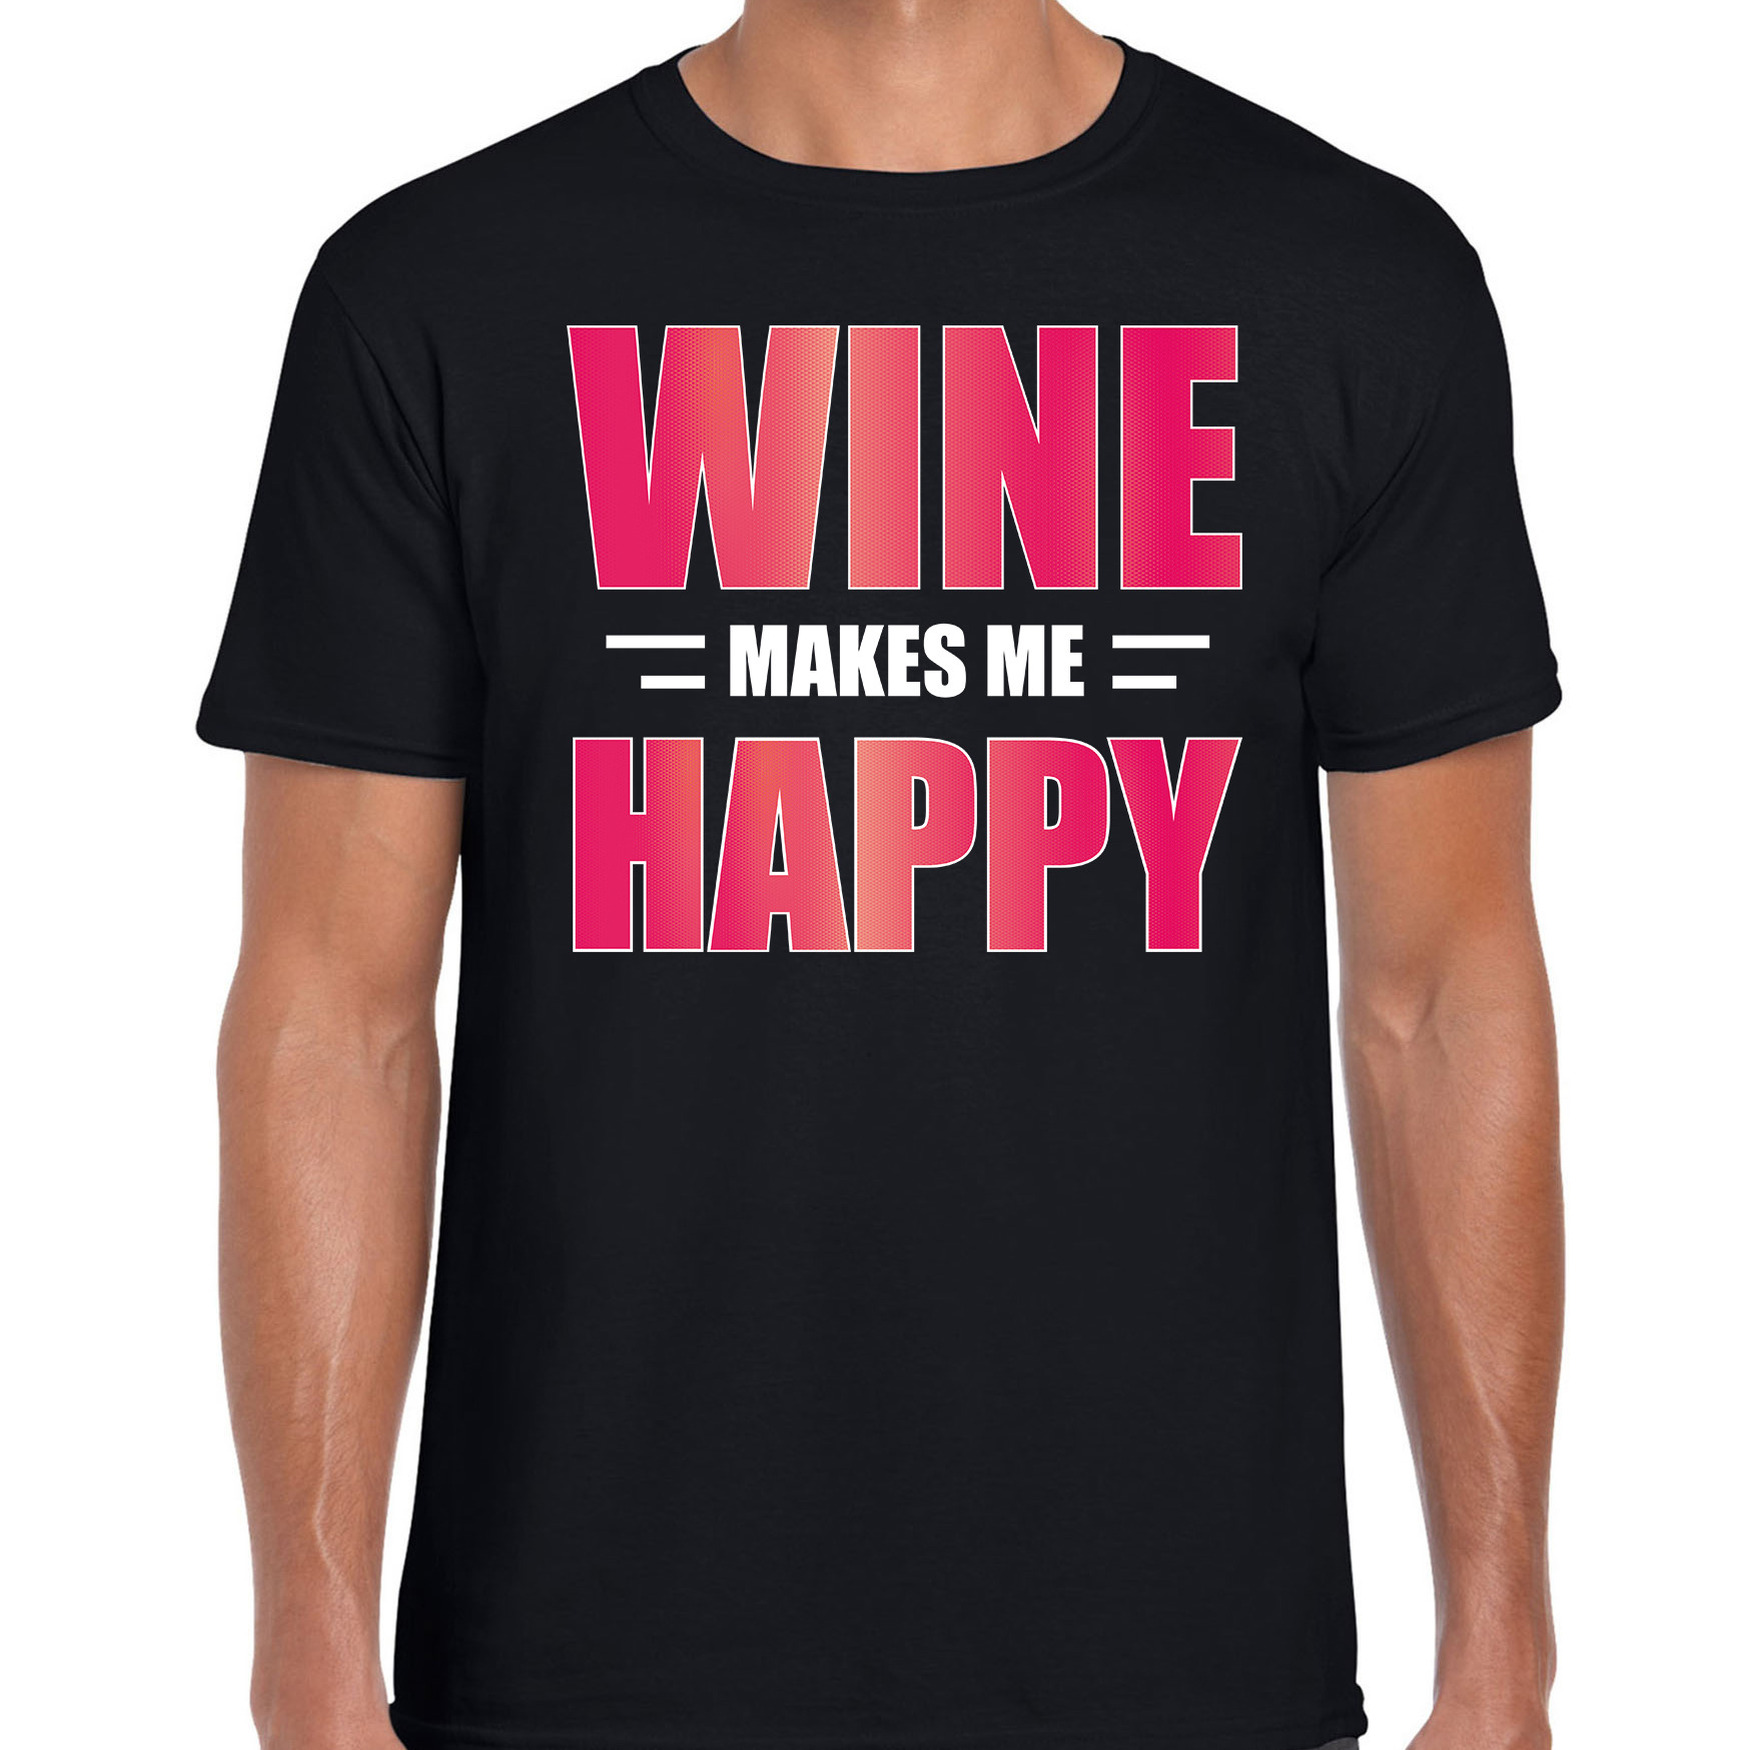 Wine makes me happy drank t-shirt-kleding zwart voor heren